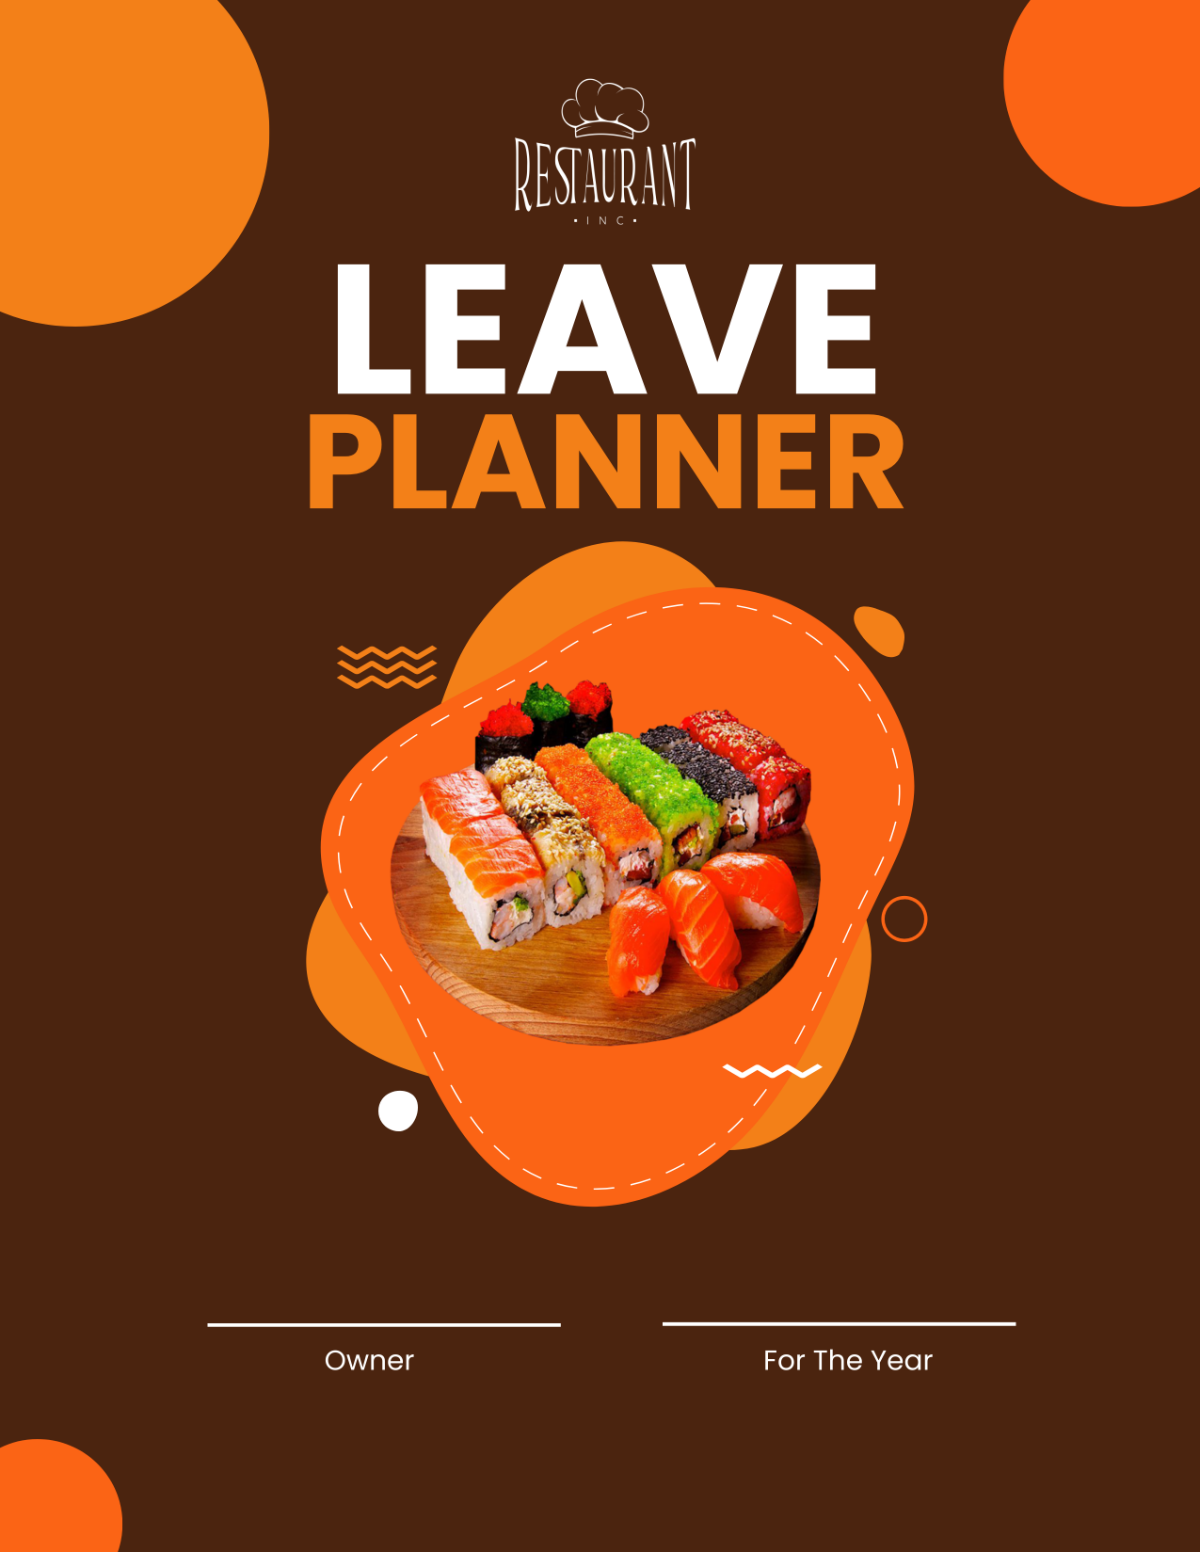 Restaurant Leave Planner